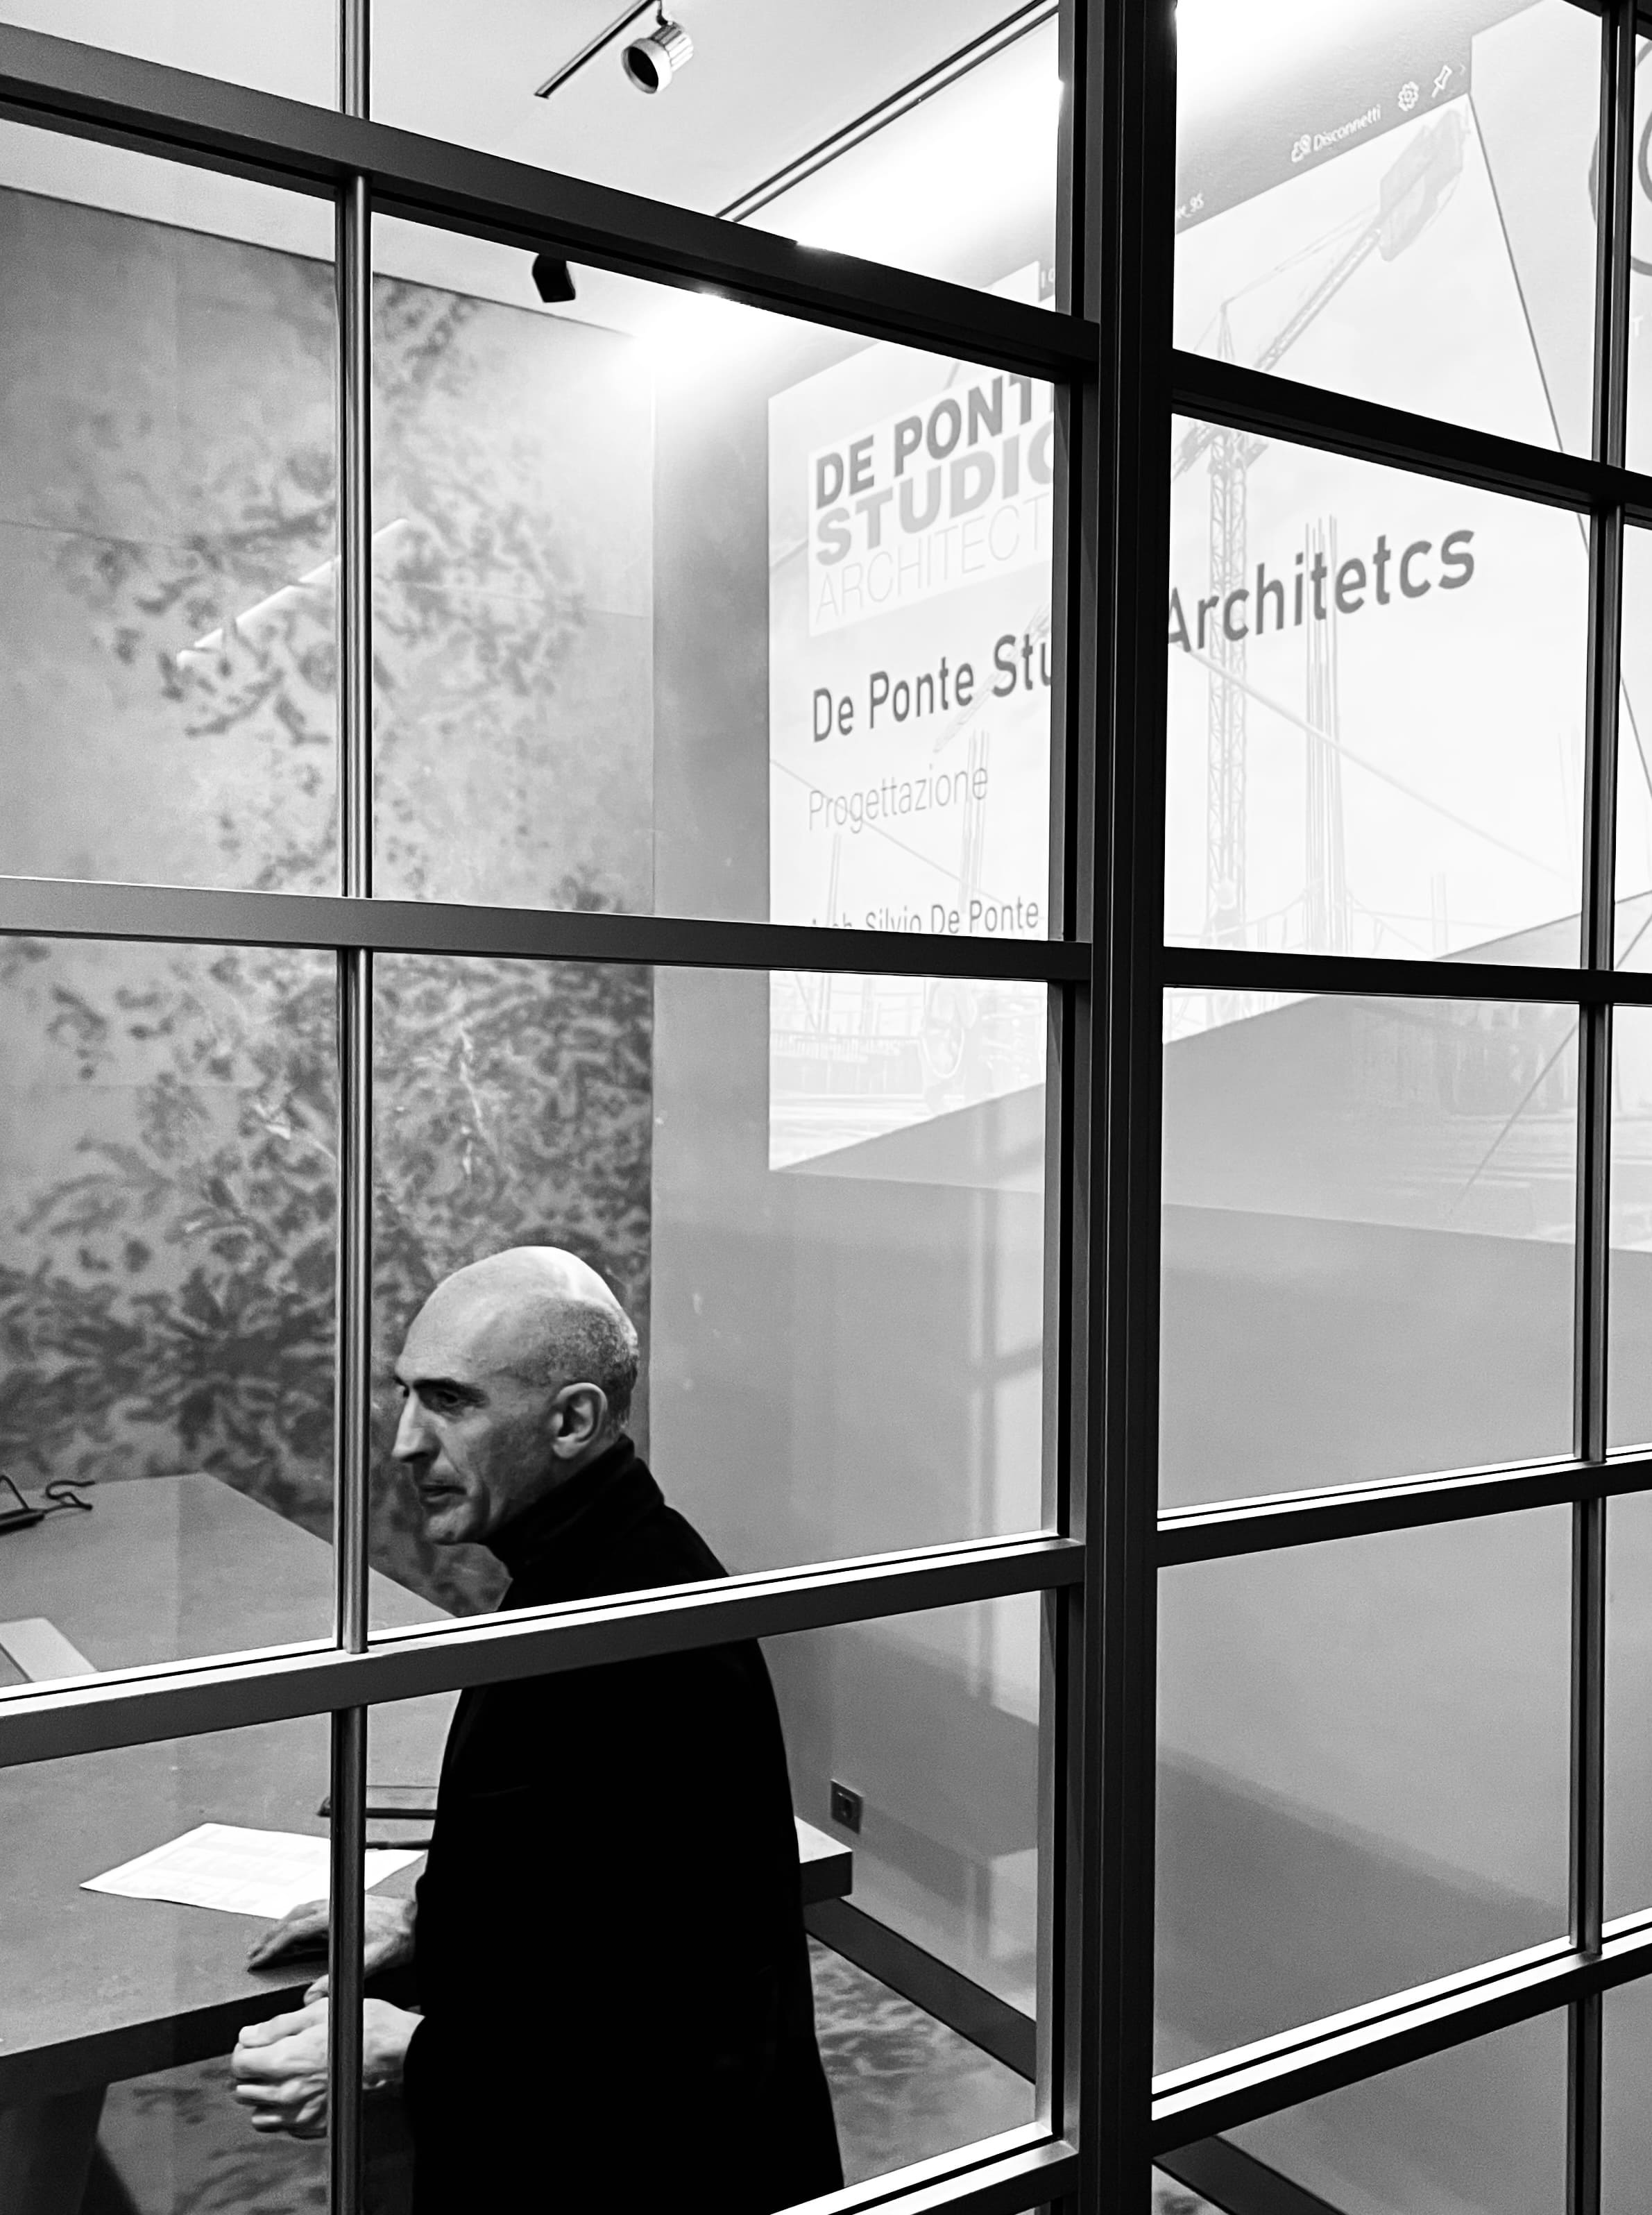 Silvio  De Ponte <br/> Founder of De Ponte Studio Architects